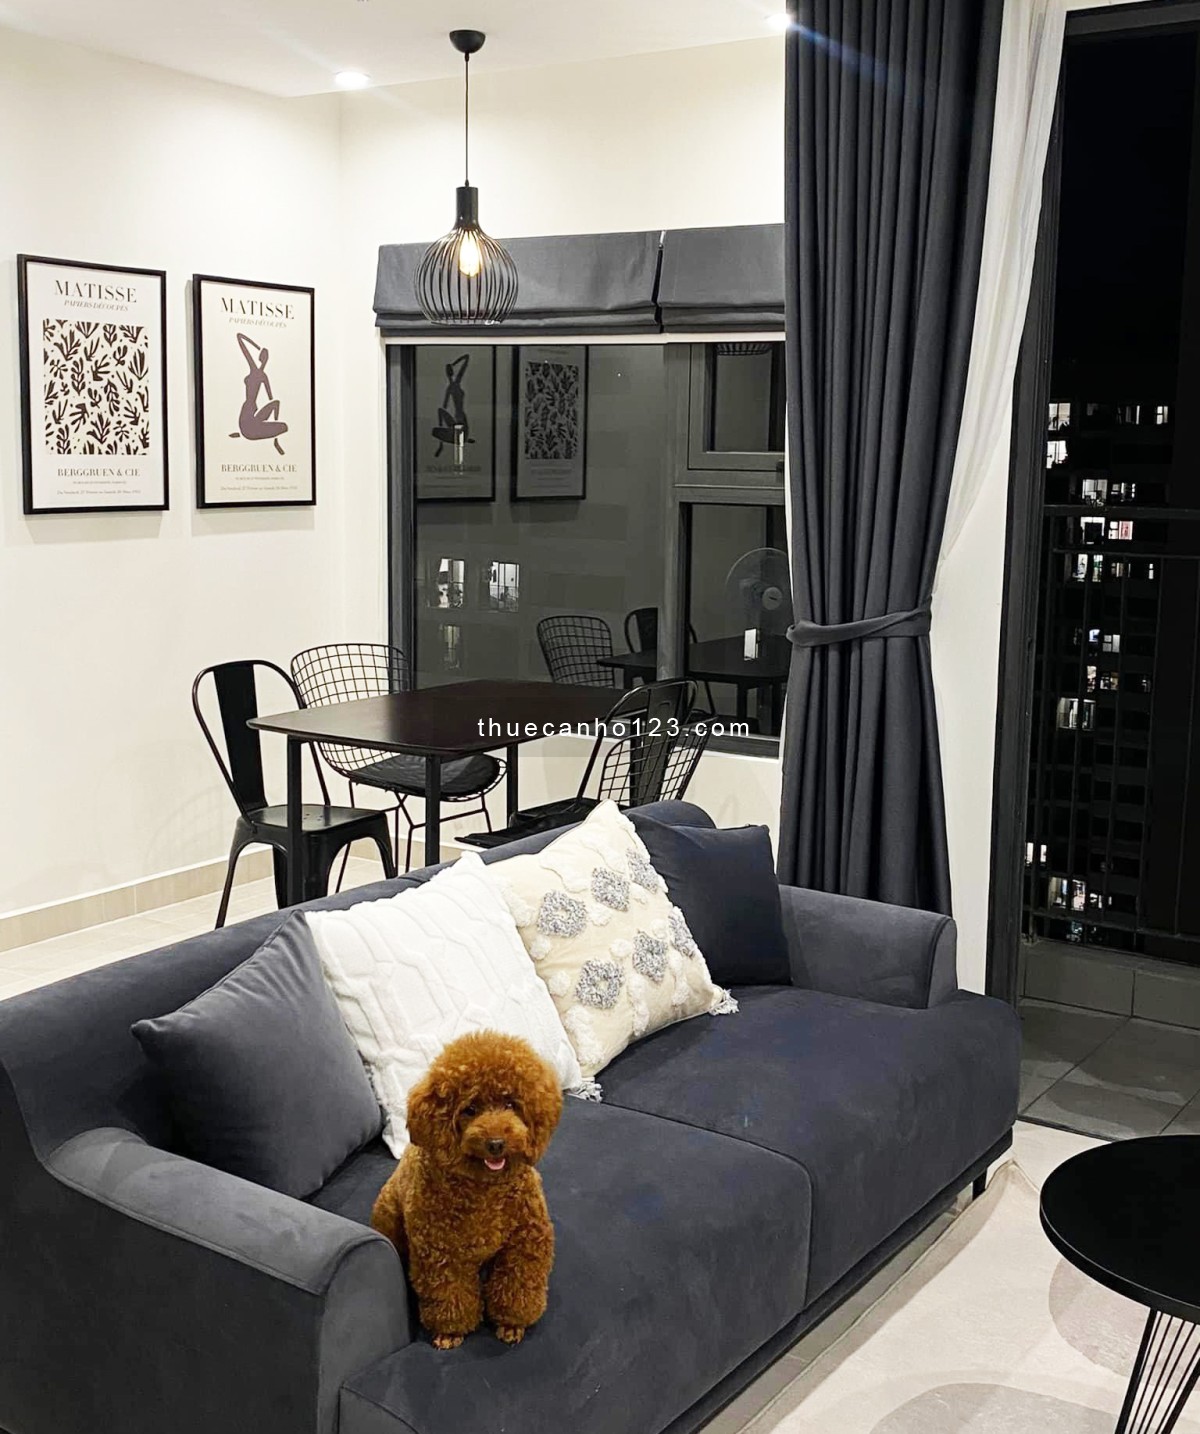 Cho thuê căn hộ Vinhome 2PN, căn góc khu mới 100%, đầy đủ nội thất